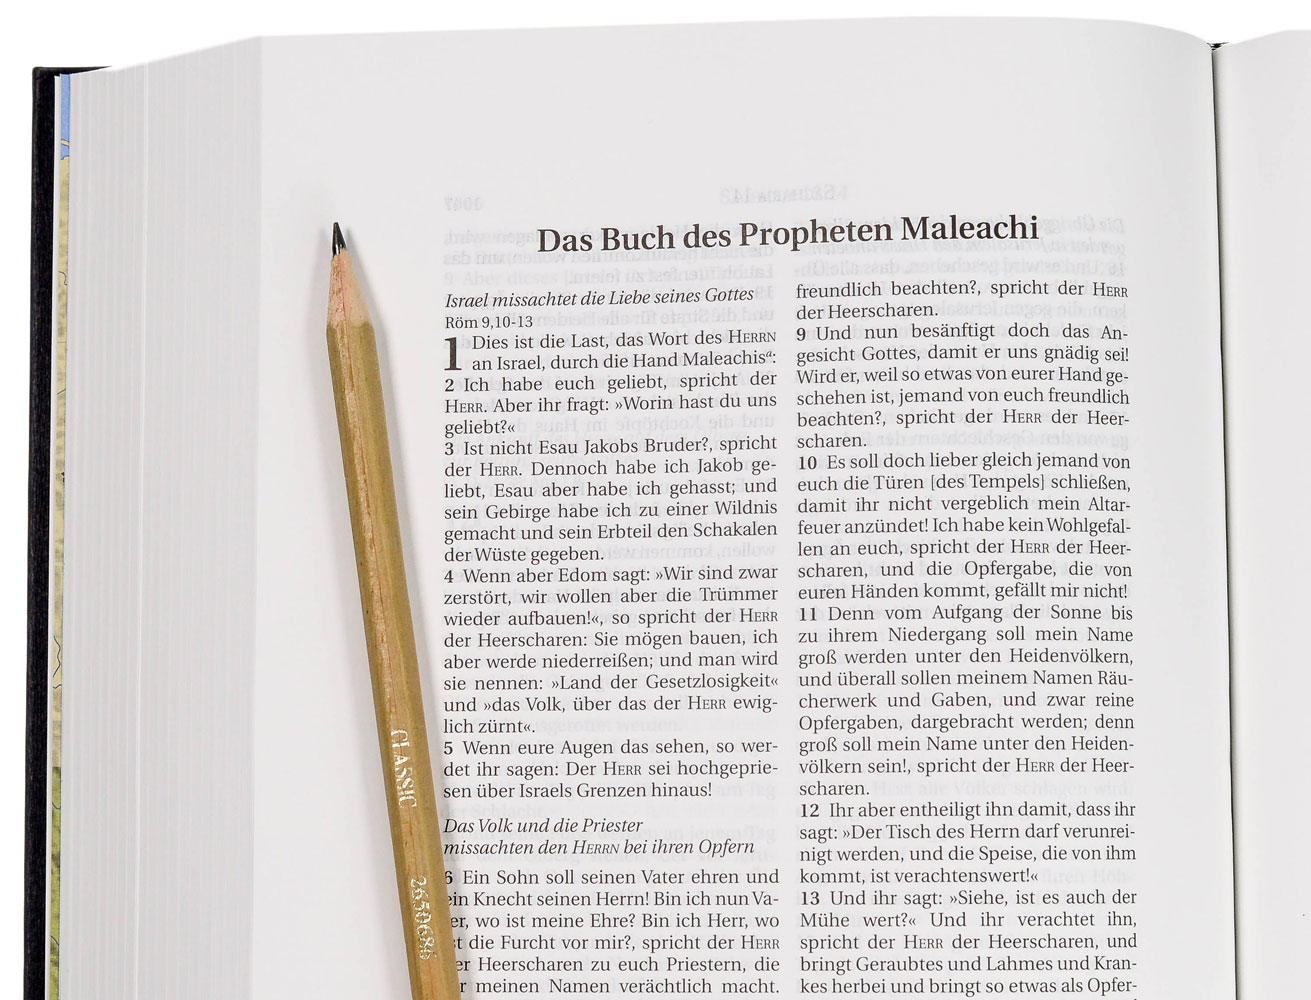 Schlachter 2000 Bibel – Schreibrandausgabe (Hardcover, schwarz)